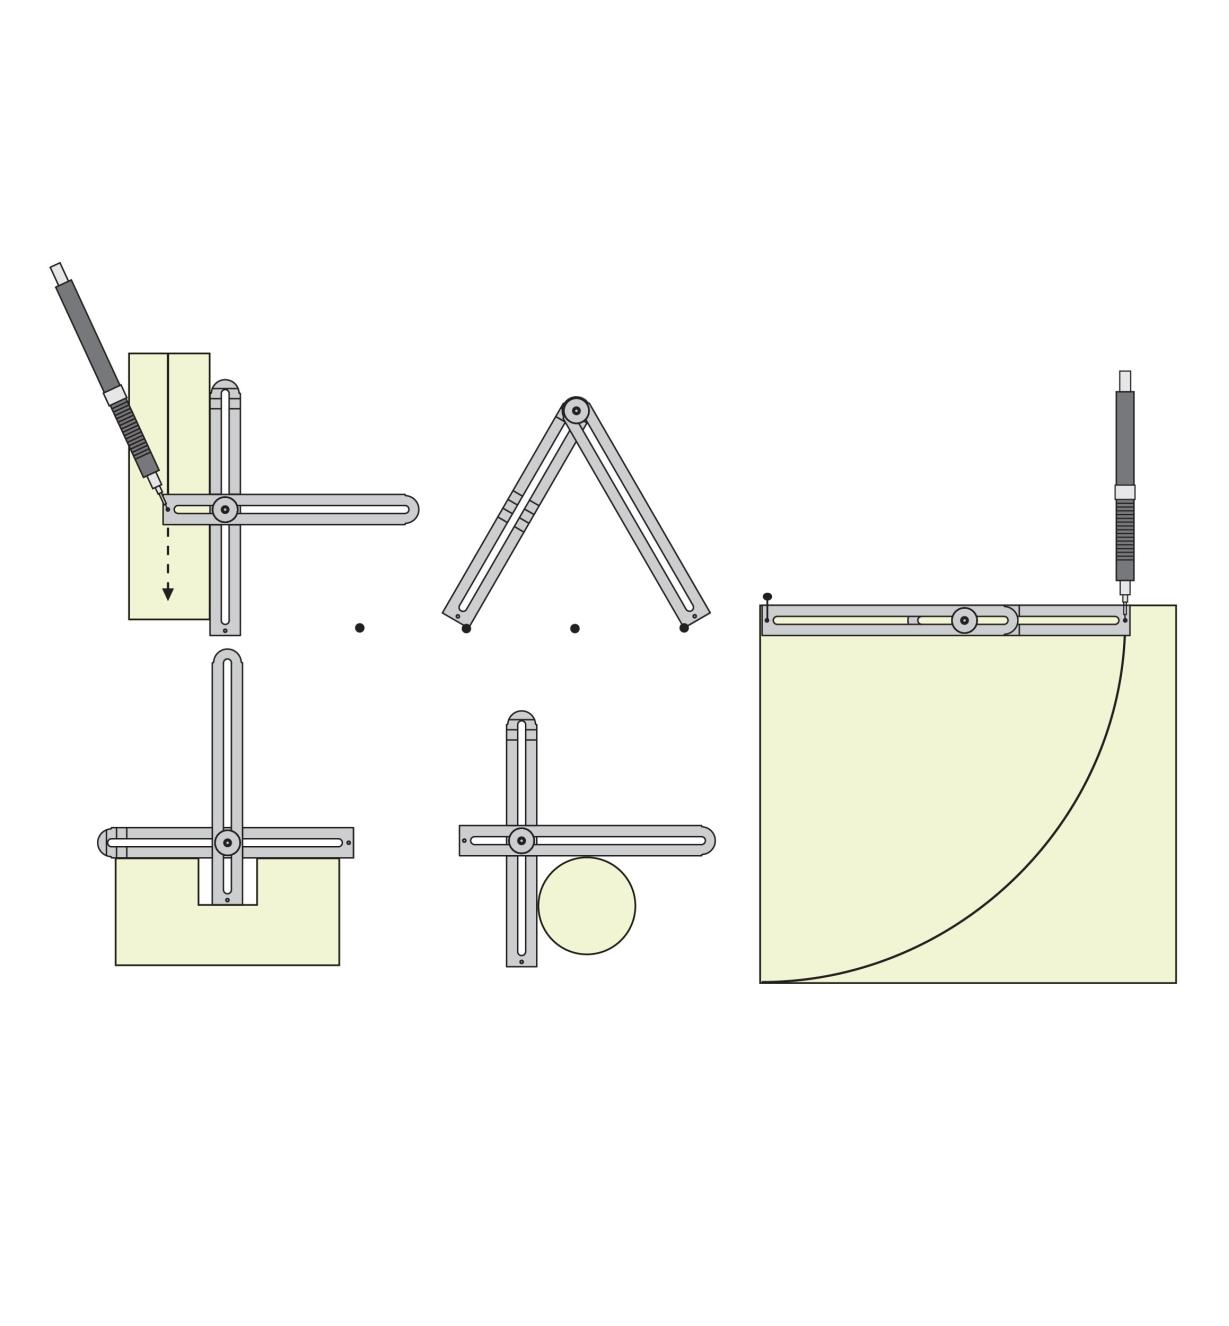 Illustrations of marking multi-tool uses